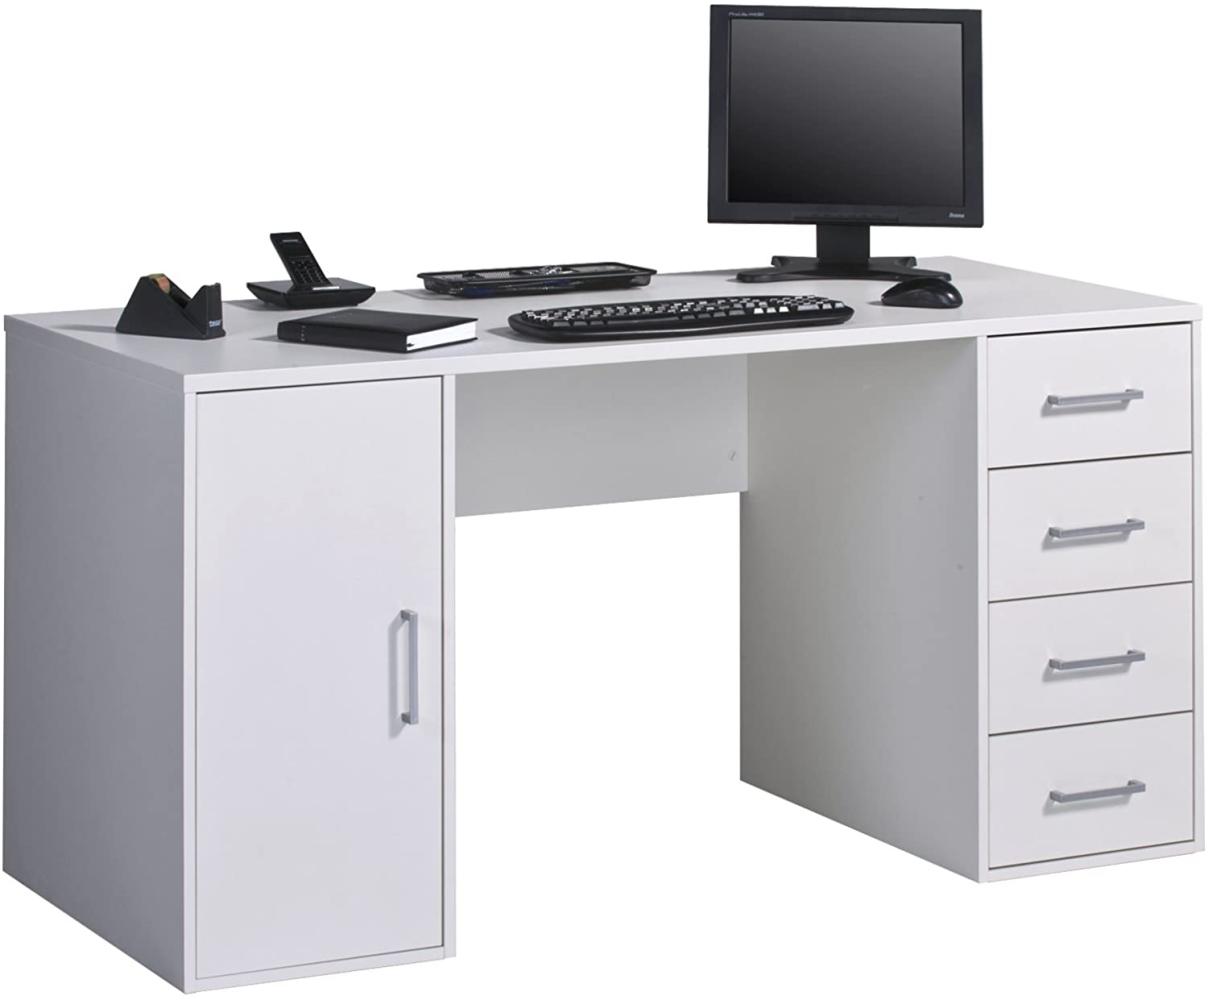 MAJA Möbel Office EINZELMODELLE Schreib-und Computertisch, Holzdekor, Weiß Uni, 150,00 x 67,00 x 75,00 cm Bild 1